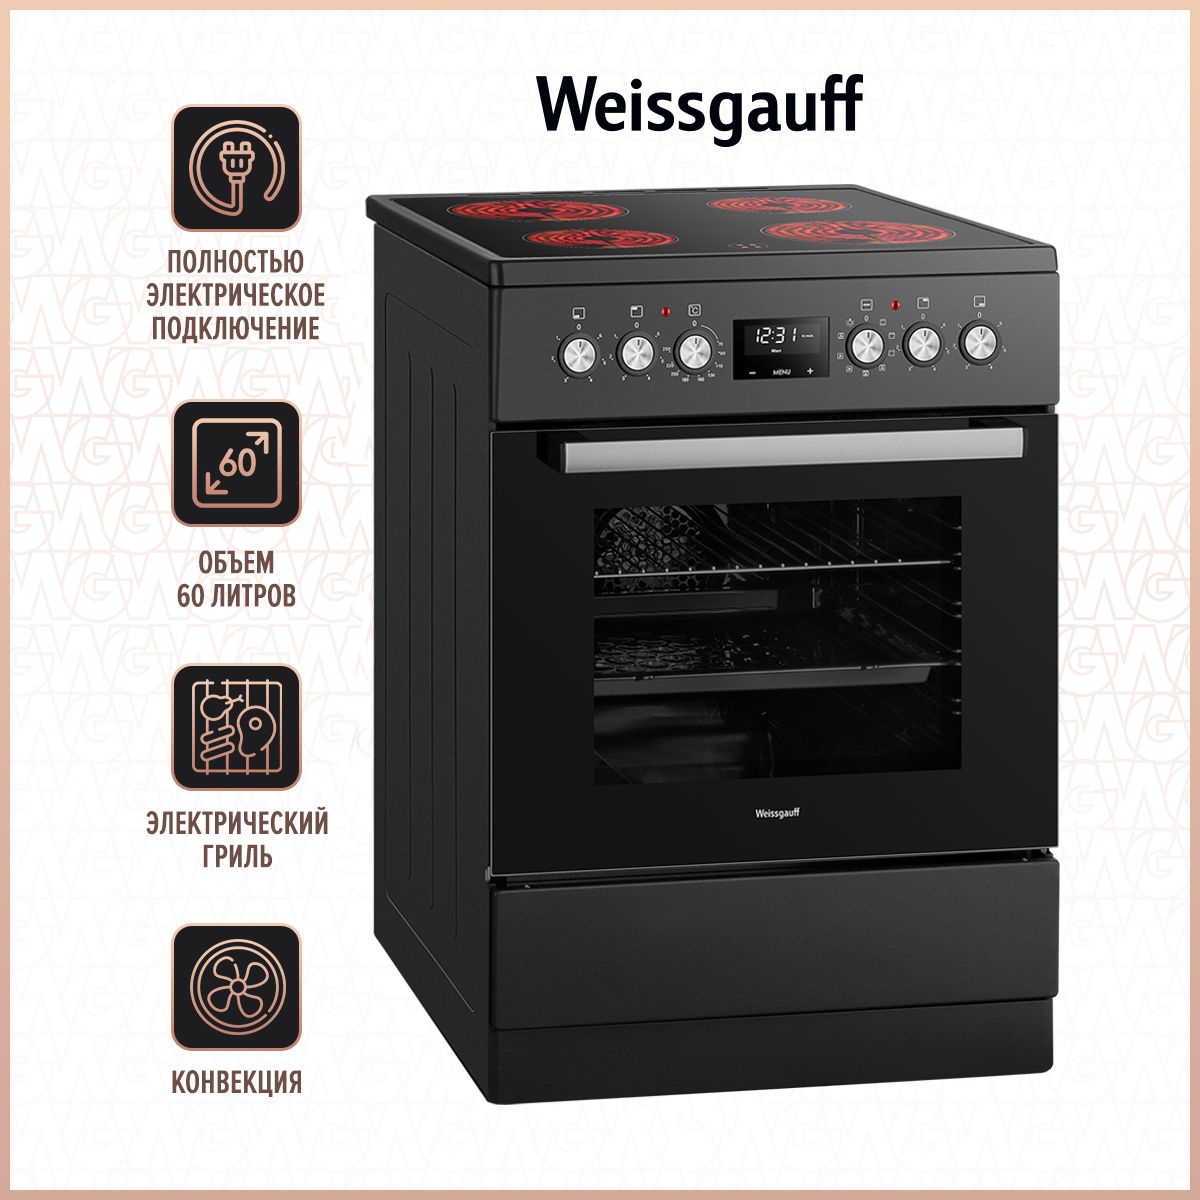 Электрическая плита Weissgauff WES E12V15 черный электрическая плита weissgauff wes e2v05 s серебристый